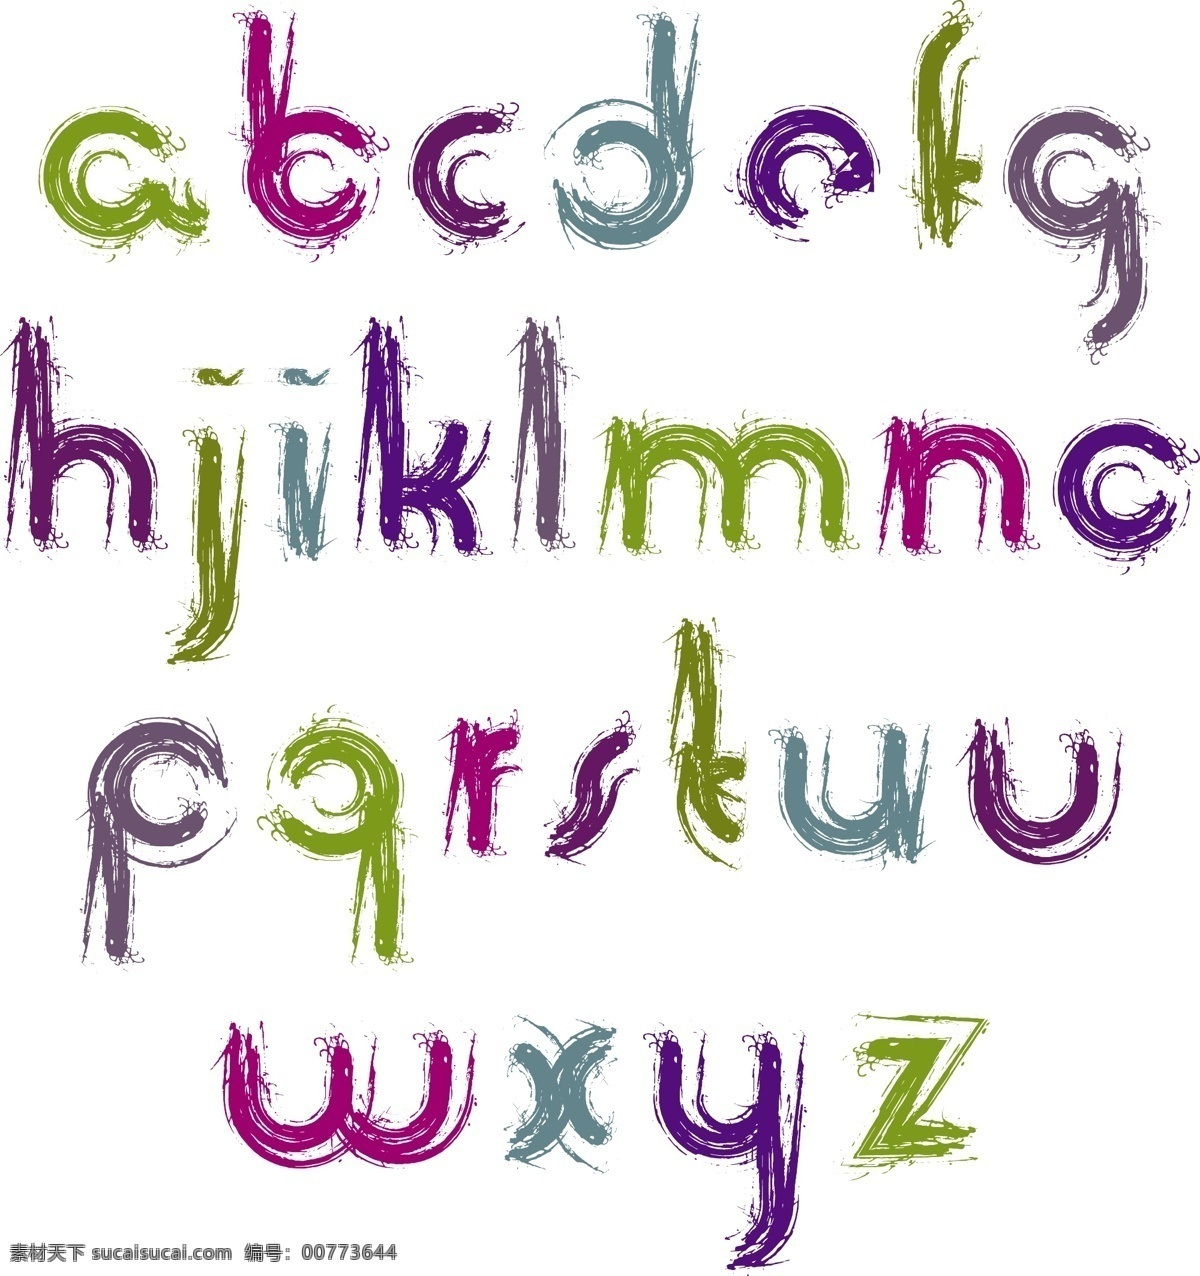 笔刷字母 水墨字母 矢量字母 卡通字母 手绘字母 字母插画 彩色字母 手写字母 笔触字母 活泼字母 创意字母 艺术字母 现代字母 时尚字母 数字字母 标志图标 其他图标